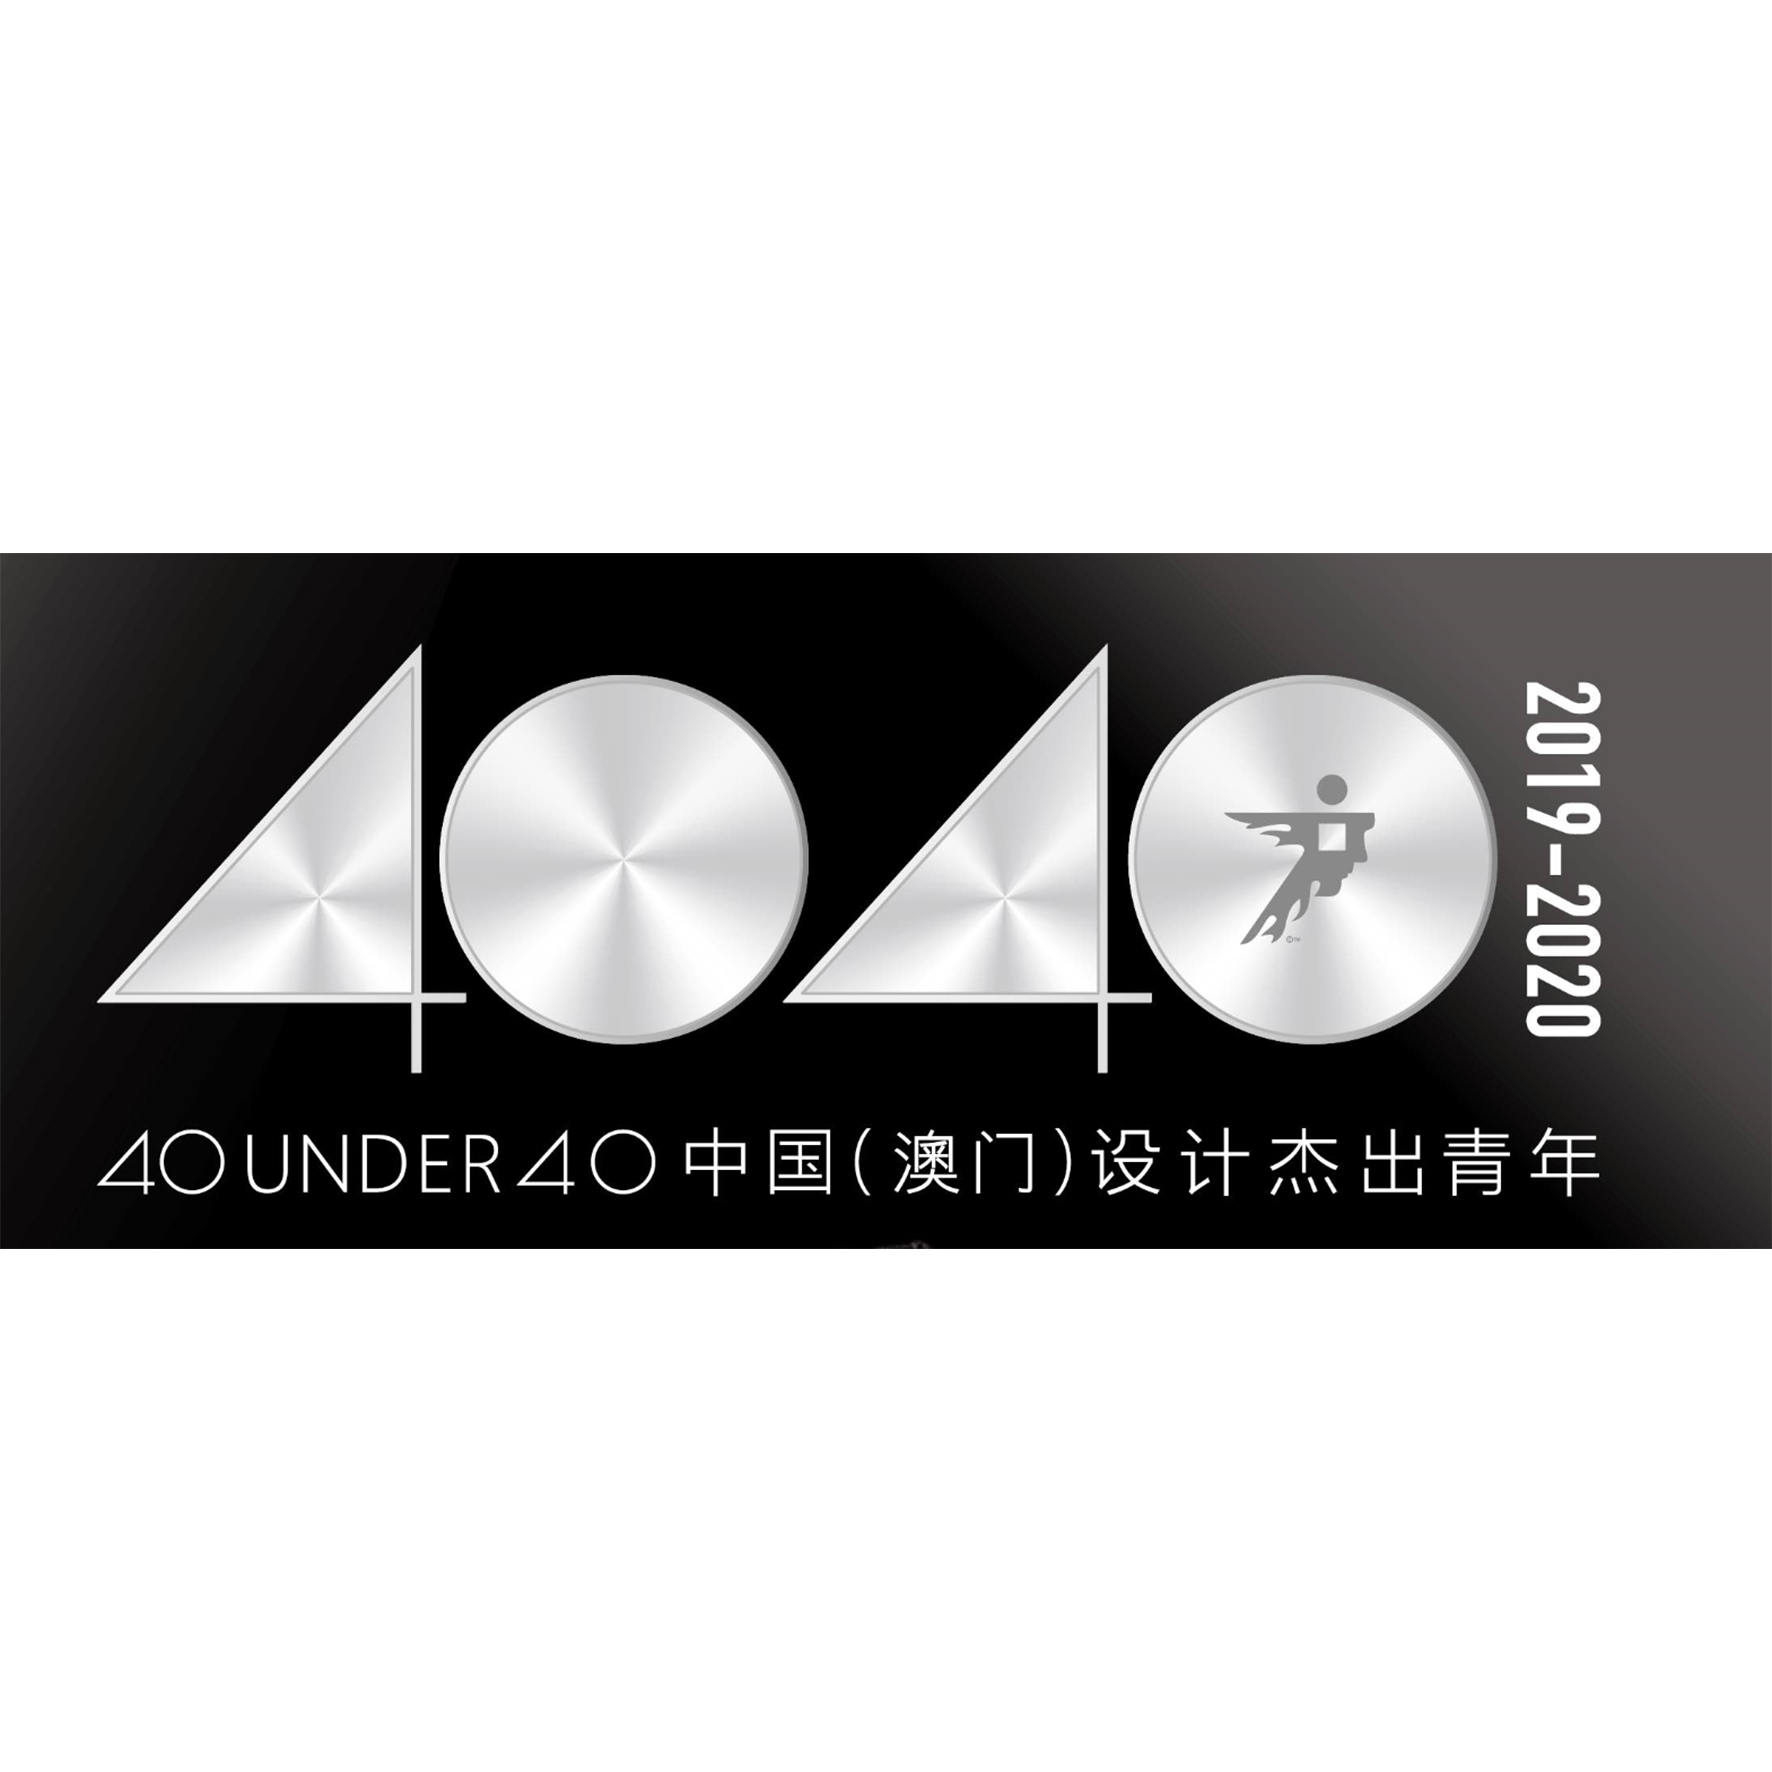 40UNDER40 中國 (澳門) 設計傑出青年2019-2020